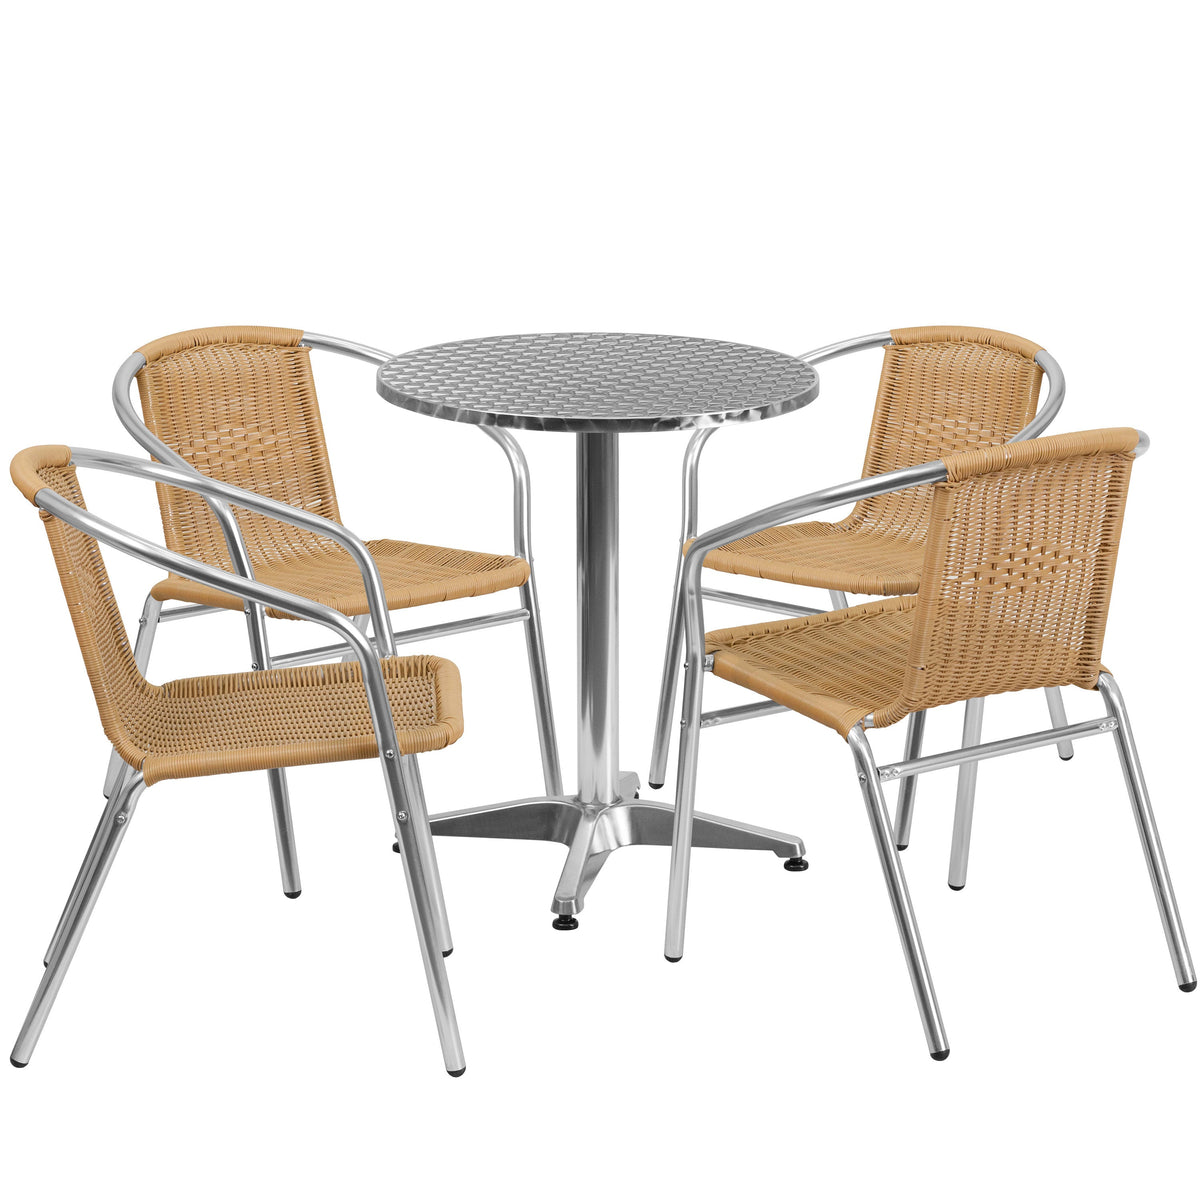 Beige |#| 23.5inch Round Aluminum Indoor-Outdoor Table Set with 4 Beige Rattan Chairs